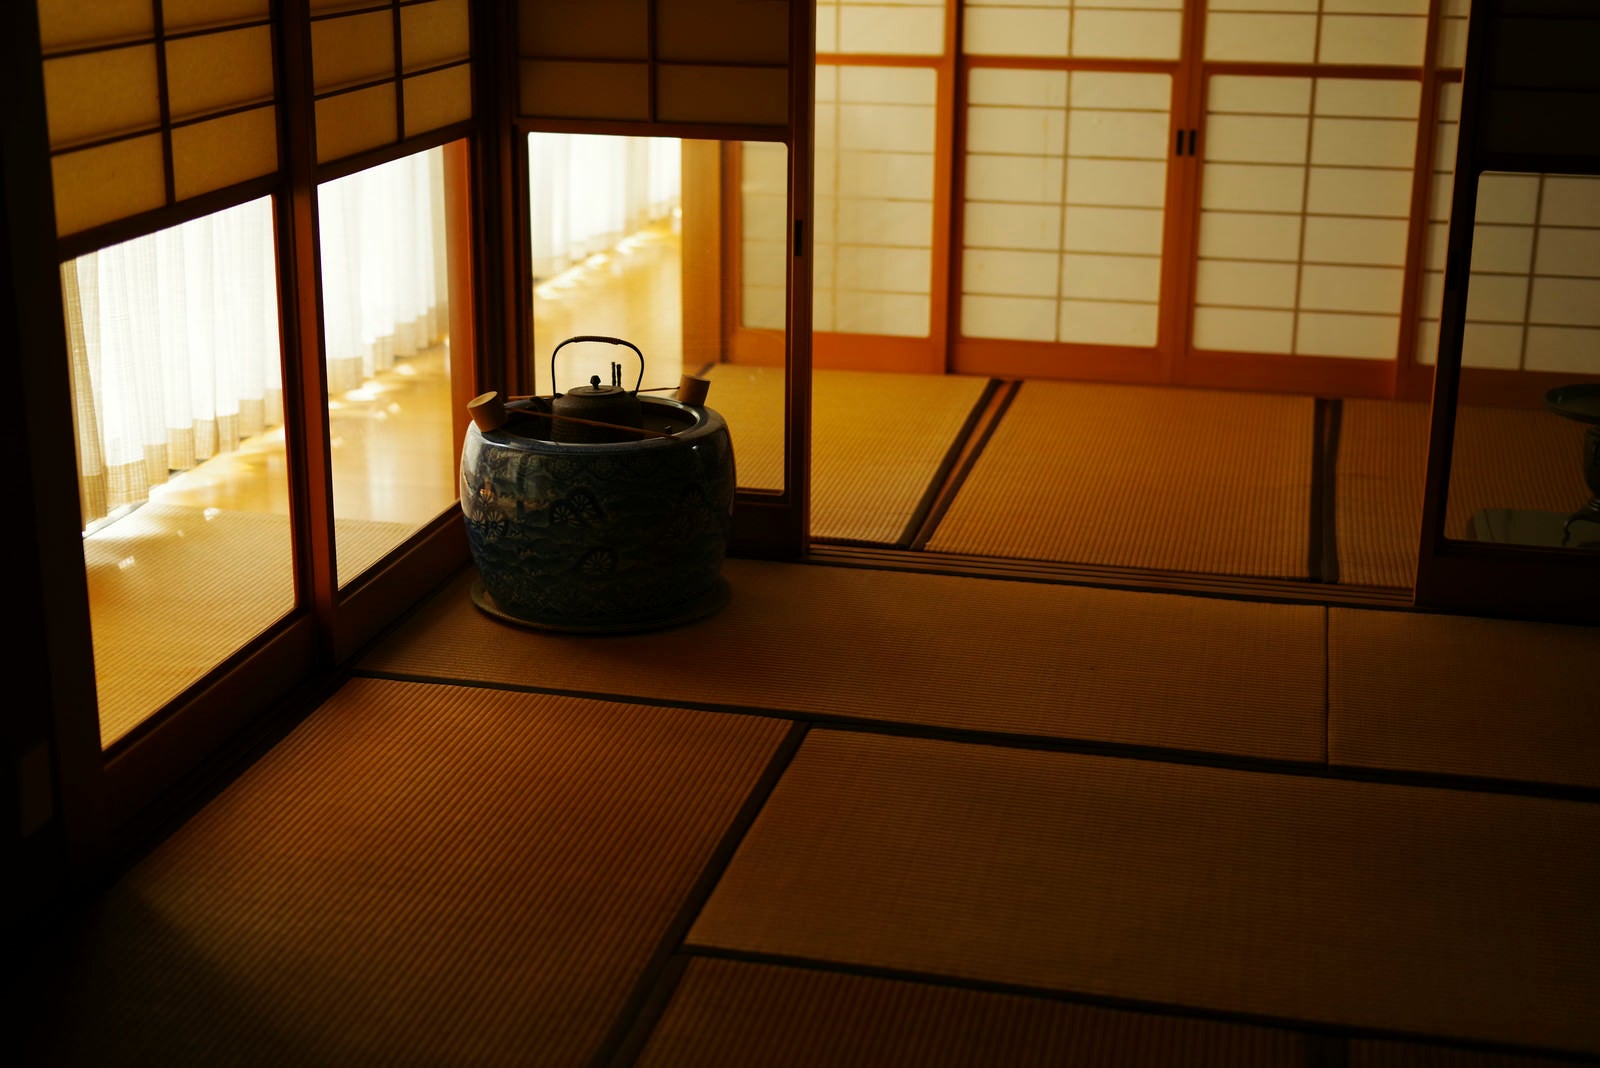 「優しい光が照らす日本家屋」の写真